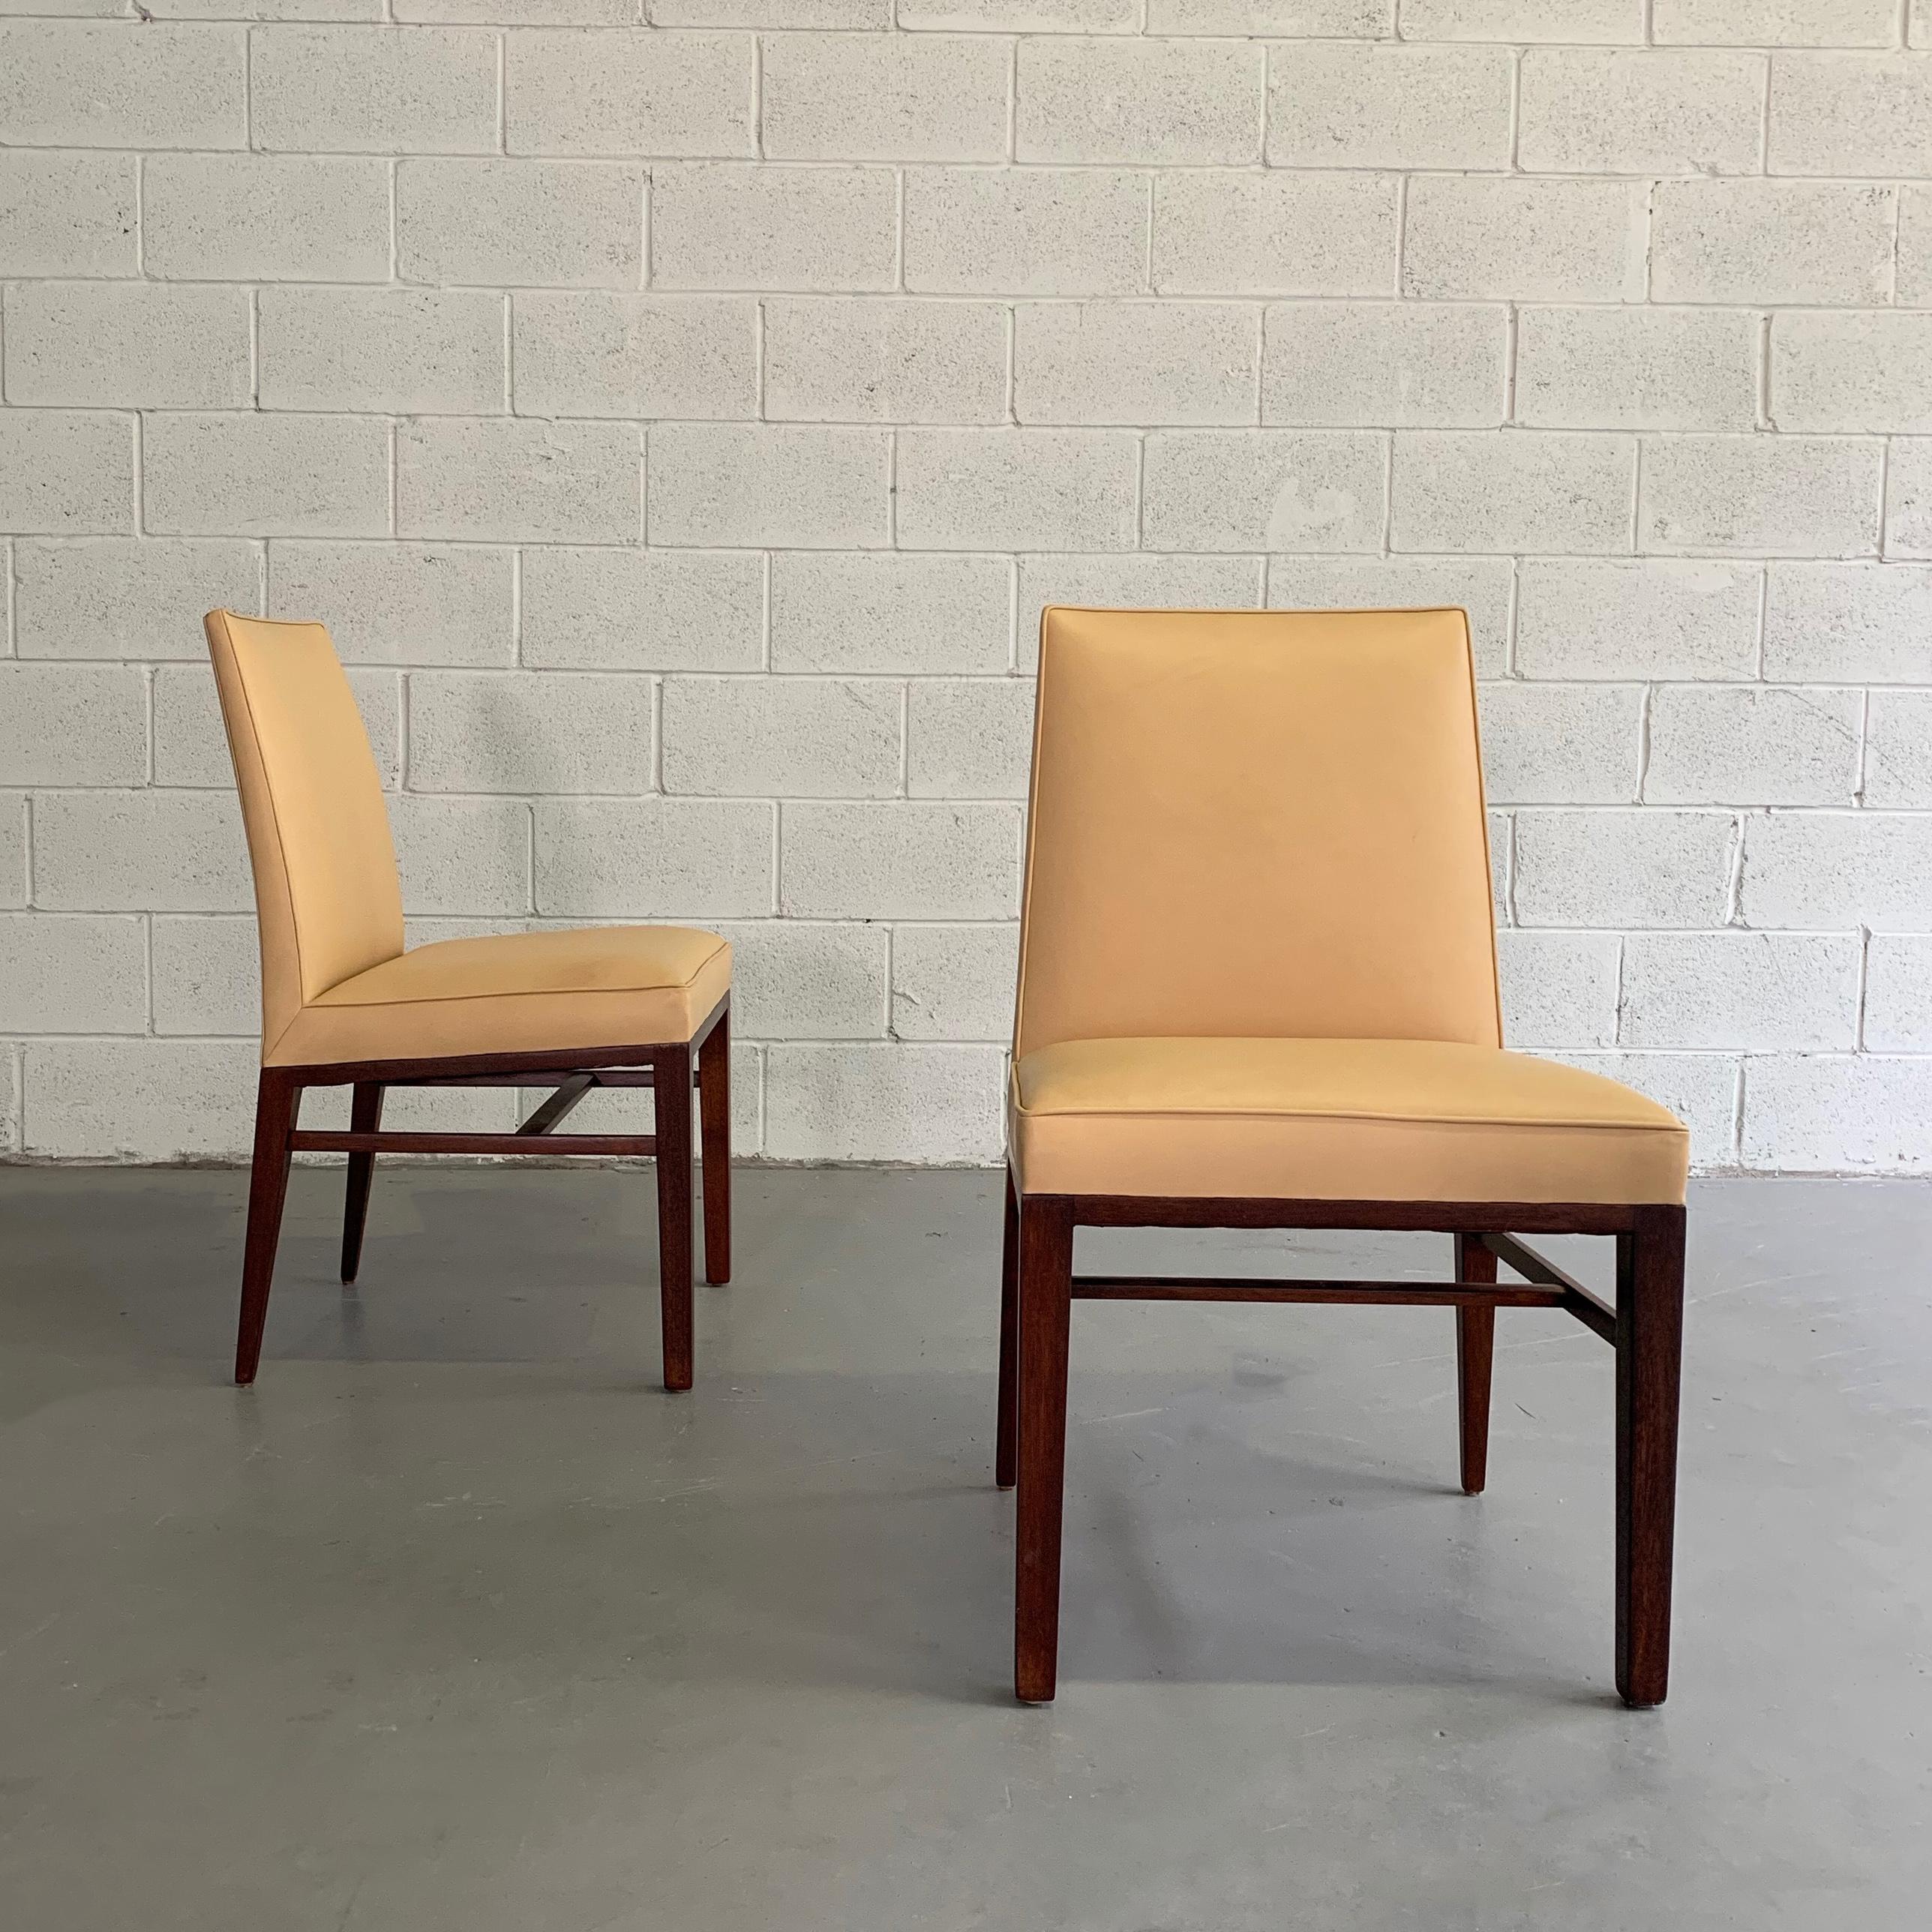 Ein Paar Beistellstühle von Edward Wormley für Dunbar mit Mahagoni-Rahmen und hoher Rückenlehne, gepolstert mit karamellfarbenem Leder.